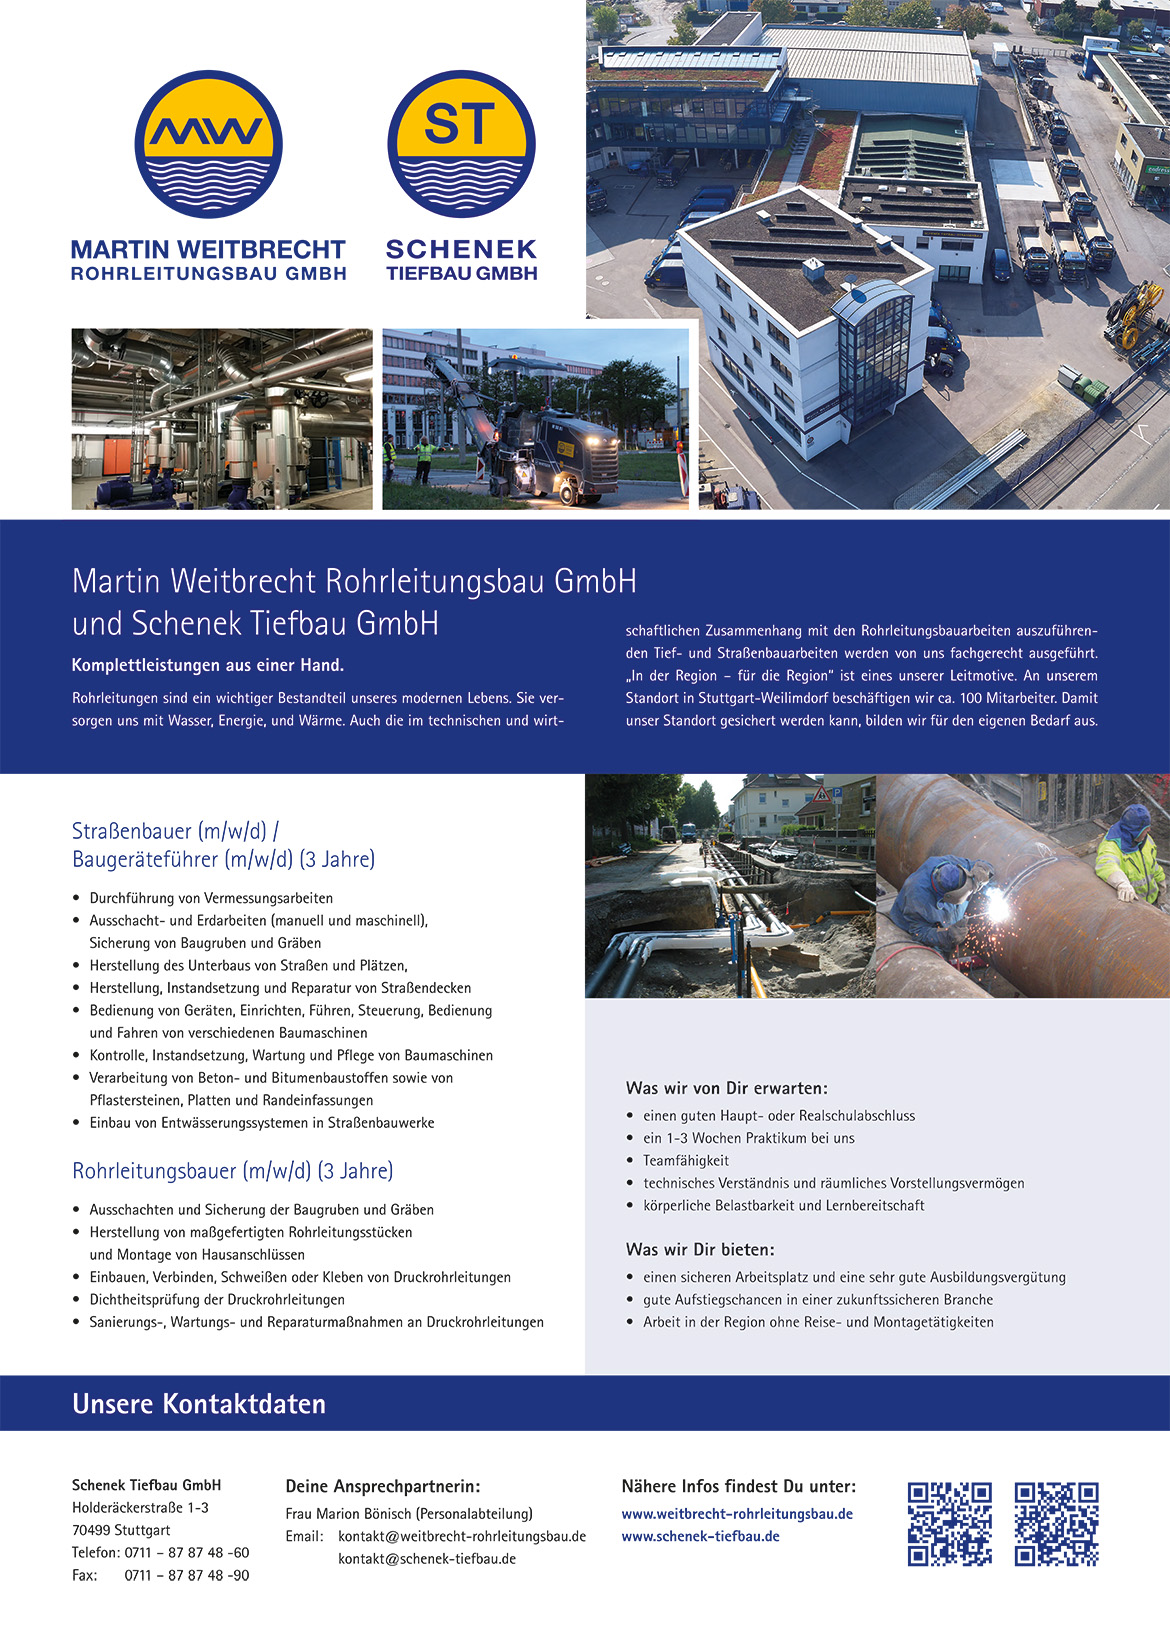 Ausbildungsplakat: Schenek Tiefbau GmbH